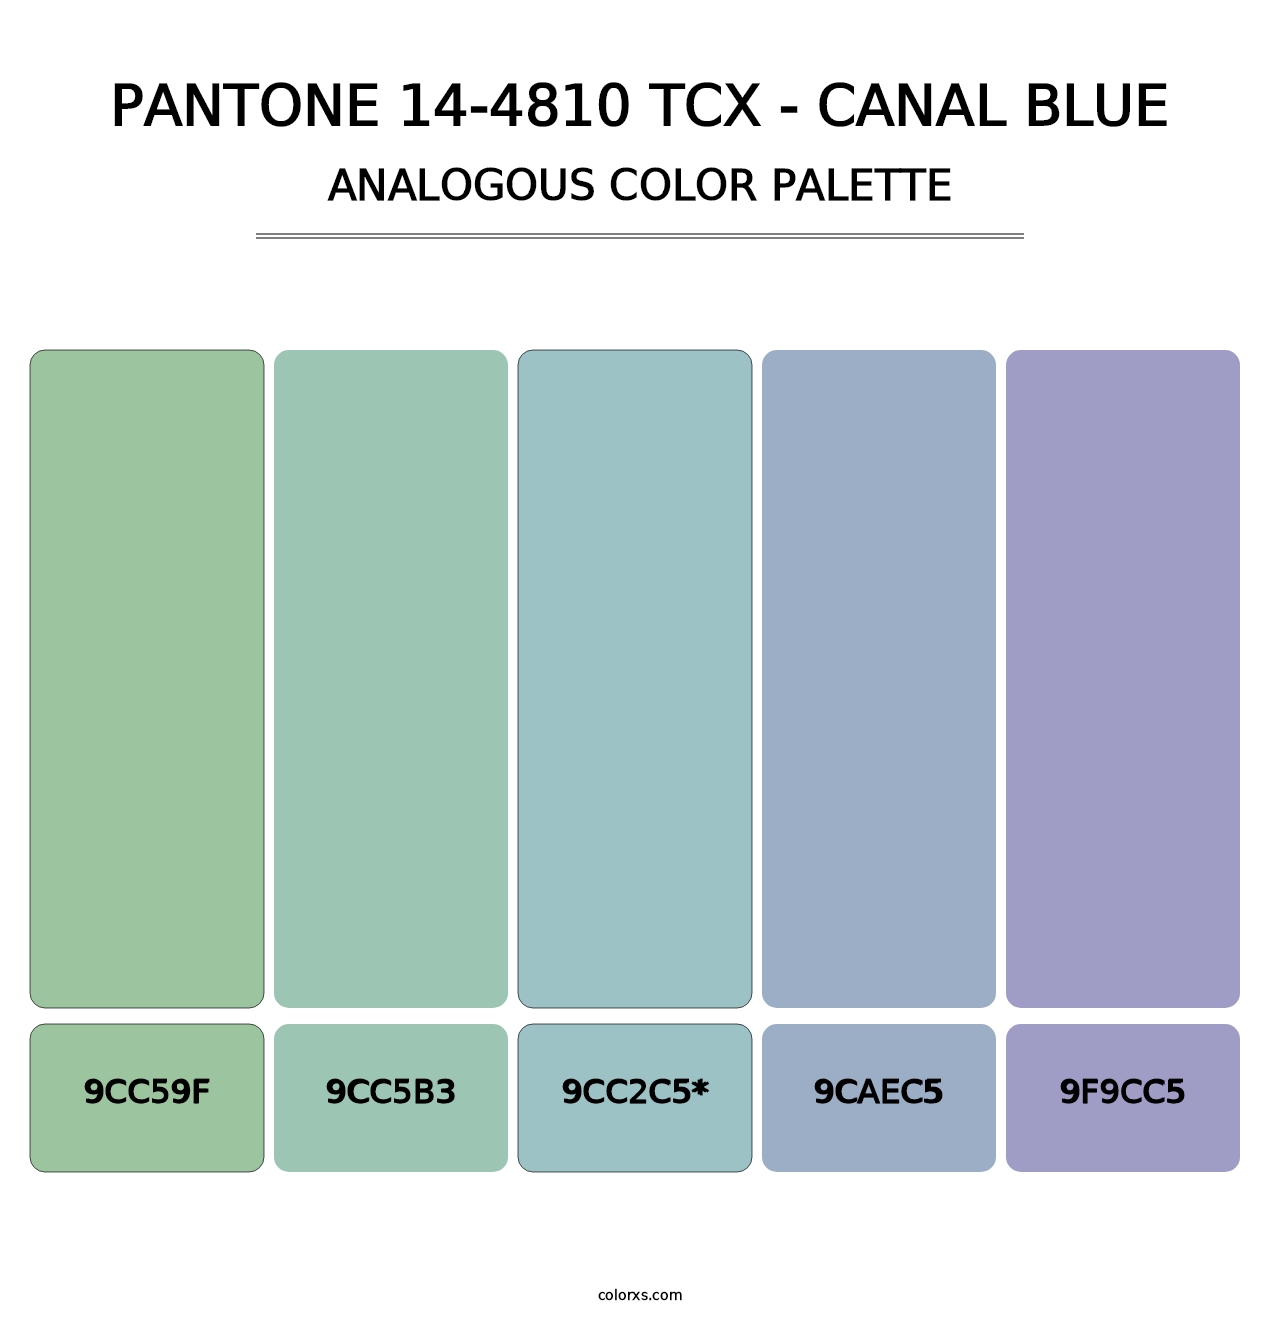 PANTONE 14-4810 TCX - Canal Blue - Analogous Color Palette